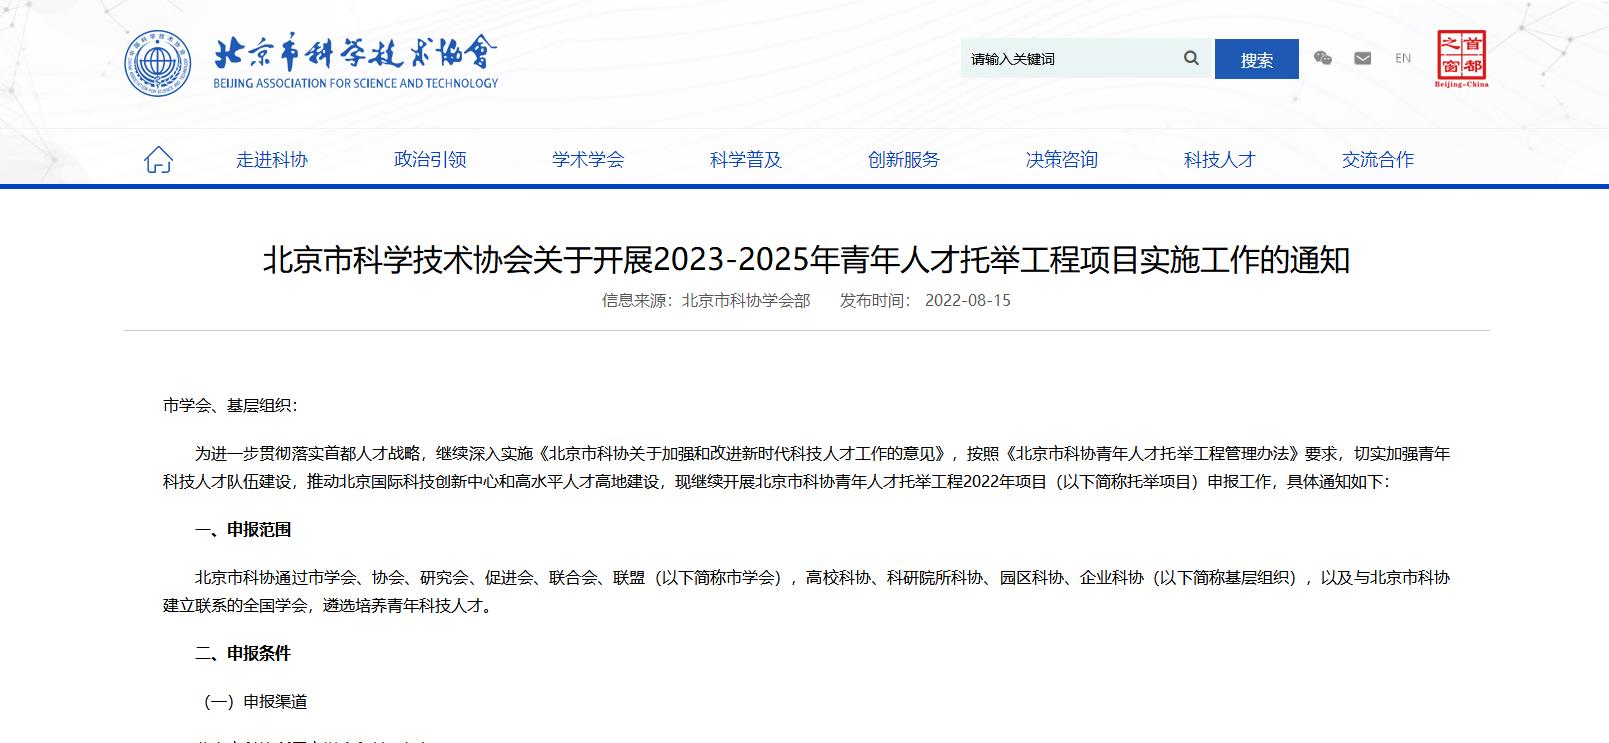 北京市科学技术协会关于开展2023-2025年青年人才托举工程项目实施工作的通知